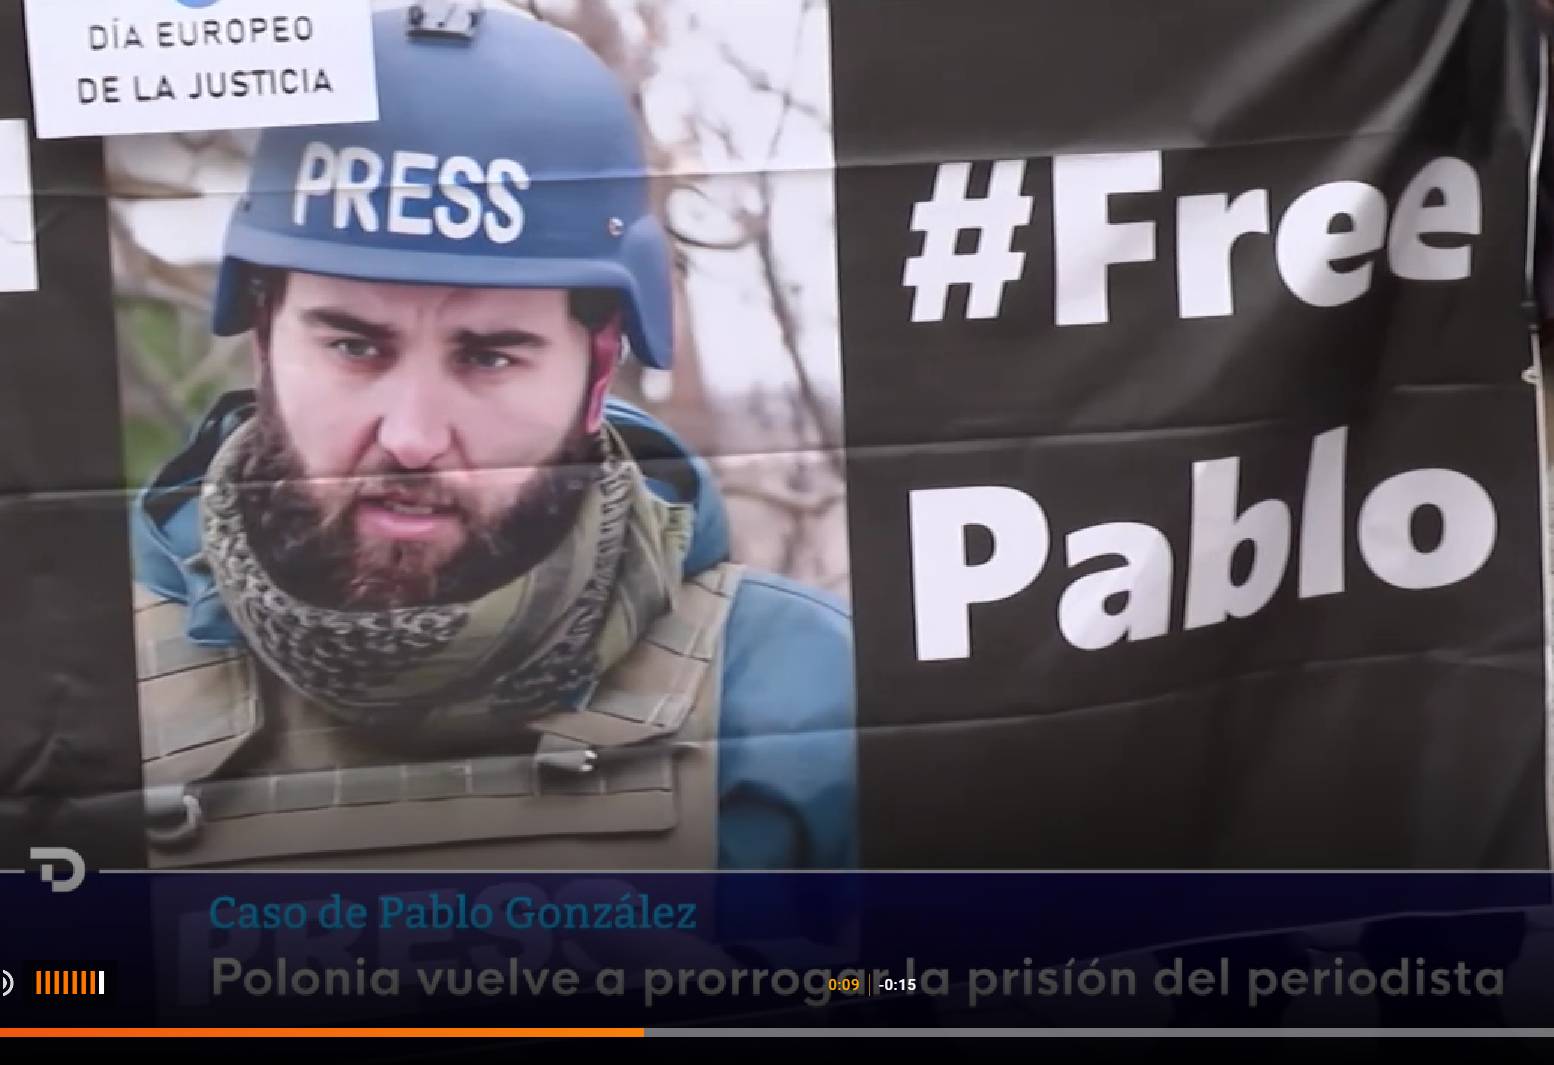 Baner z protestu na rzecz Pablo Gonzaleza. Po lewej stronie mężczyzna w średnim wieku, z ciemną brodą i wąsami, w hełmie niebieskim z napisem PRESS, po prawej na czarnym tle biały napis #FREE PABLO